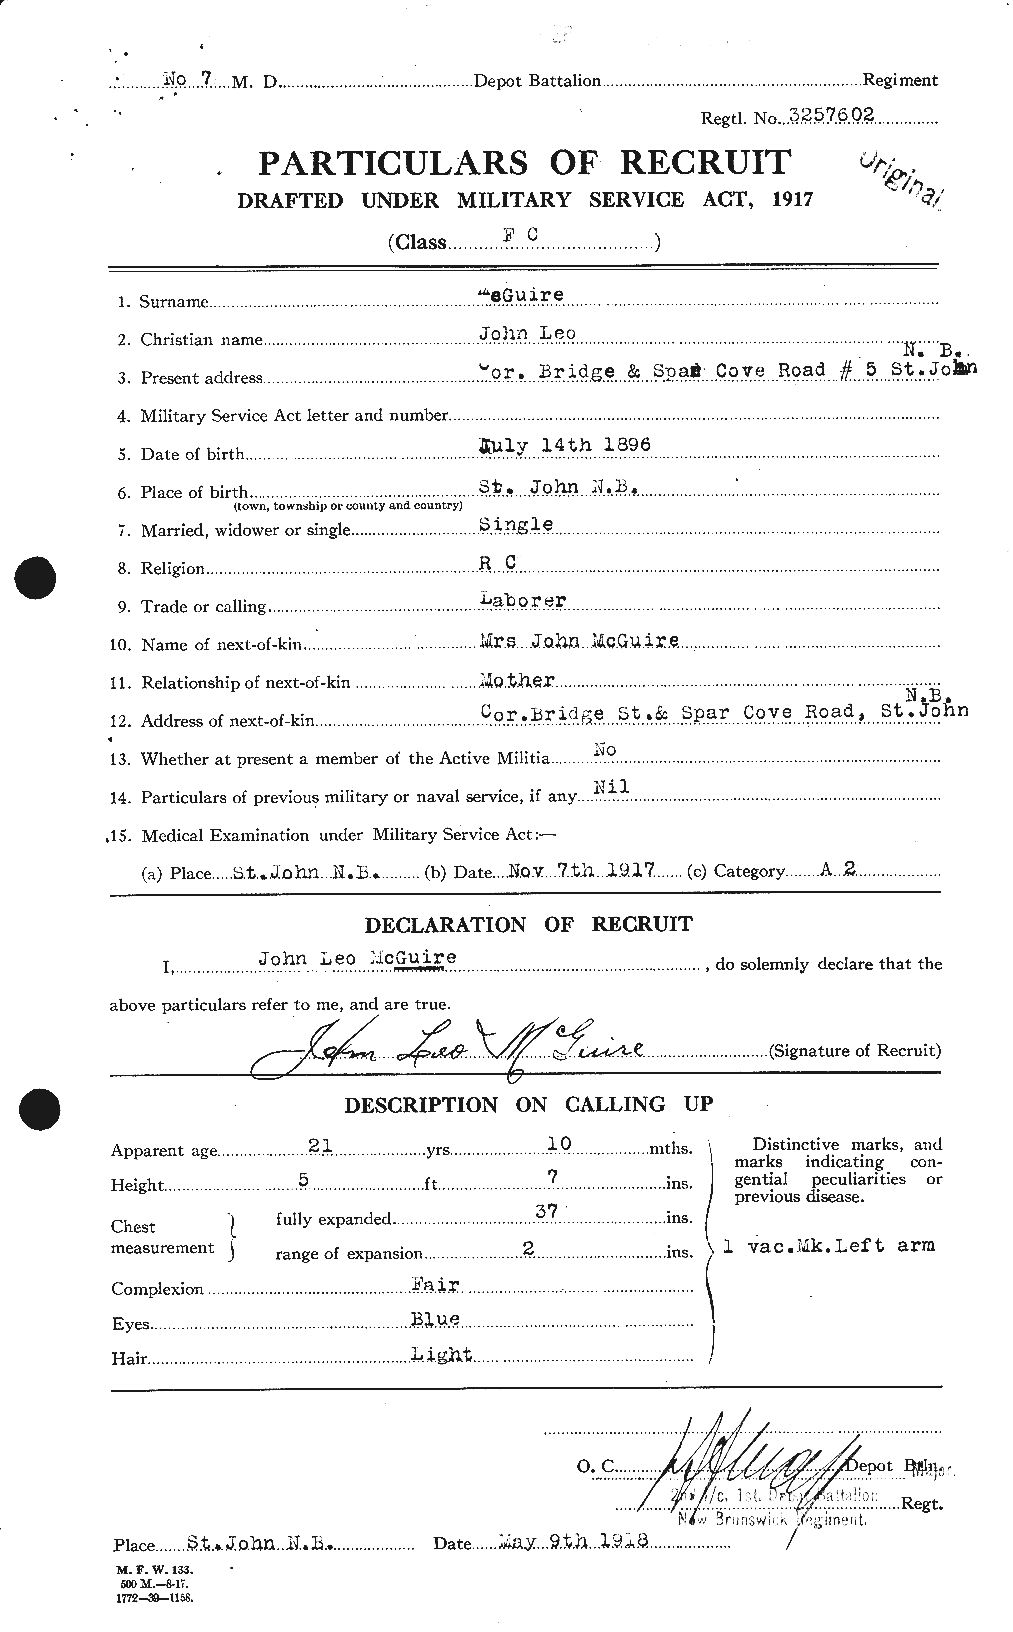 Dossiers du Personnel de la Première Guerre mondiale - CEC 523373a